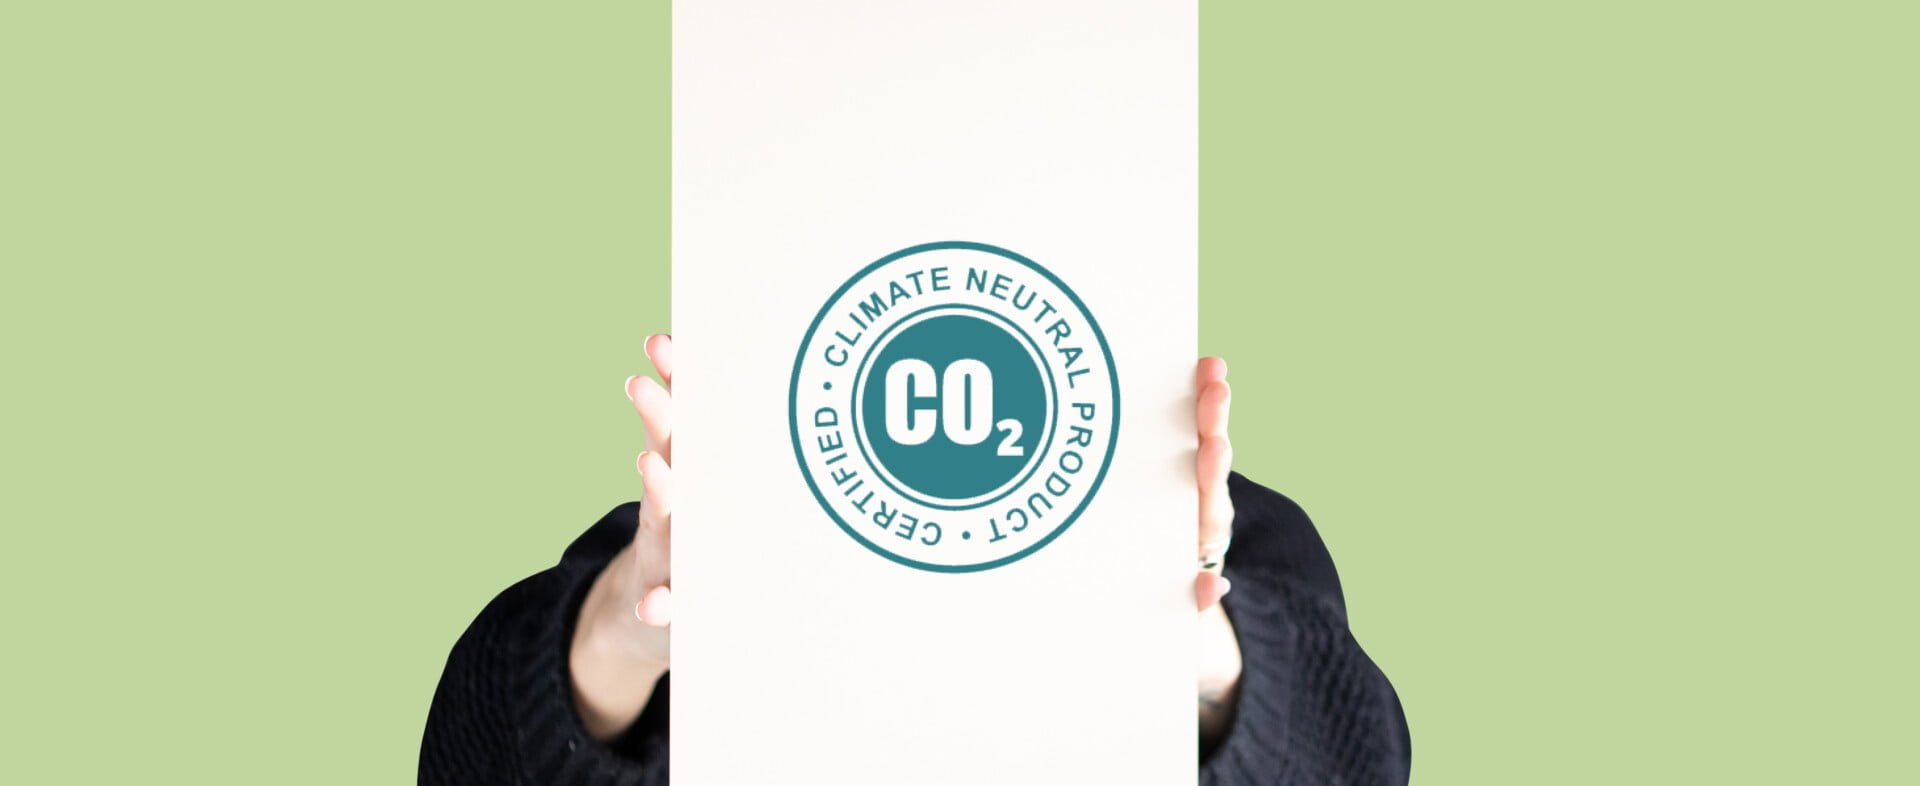 PAPERWISE IS CO2 NEUTRAAL PAPIER: HOE ZIT DAT?